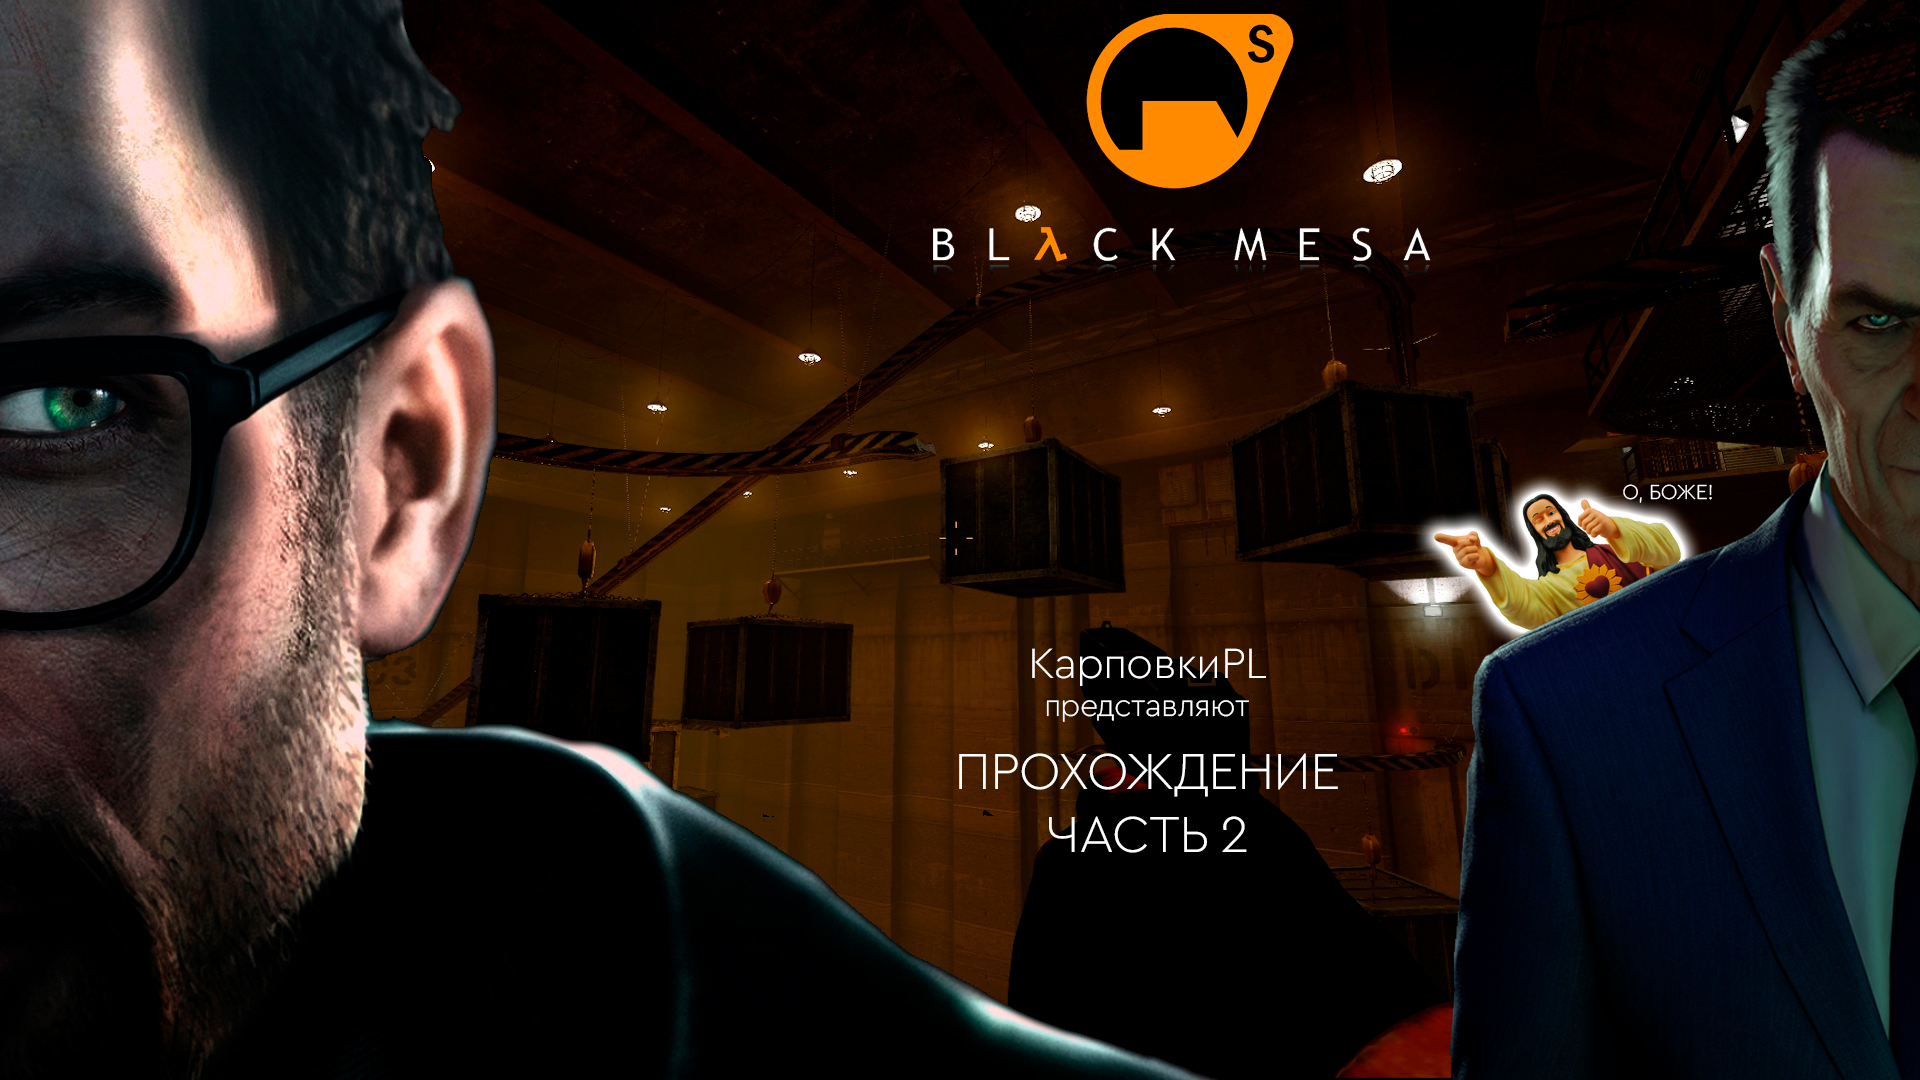 Black Mesa, часть 2. Прохождение. (О, БОЖЕ!)